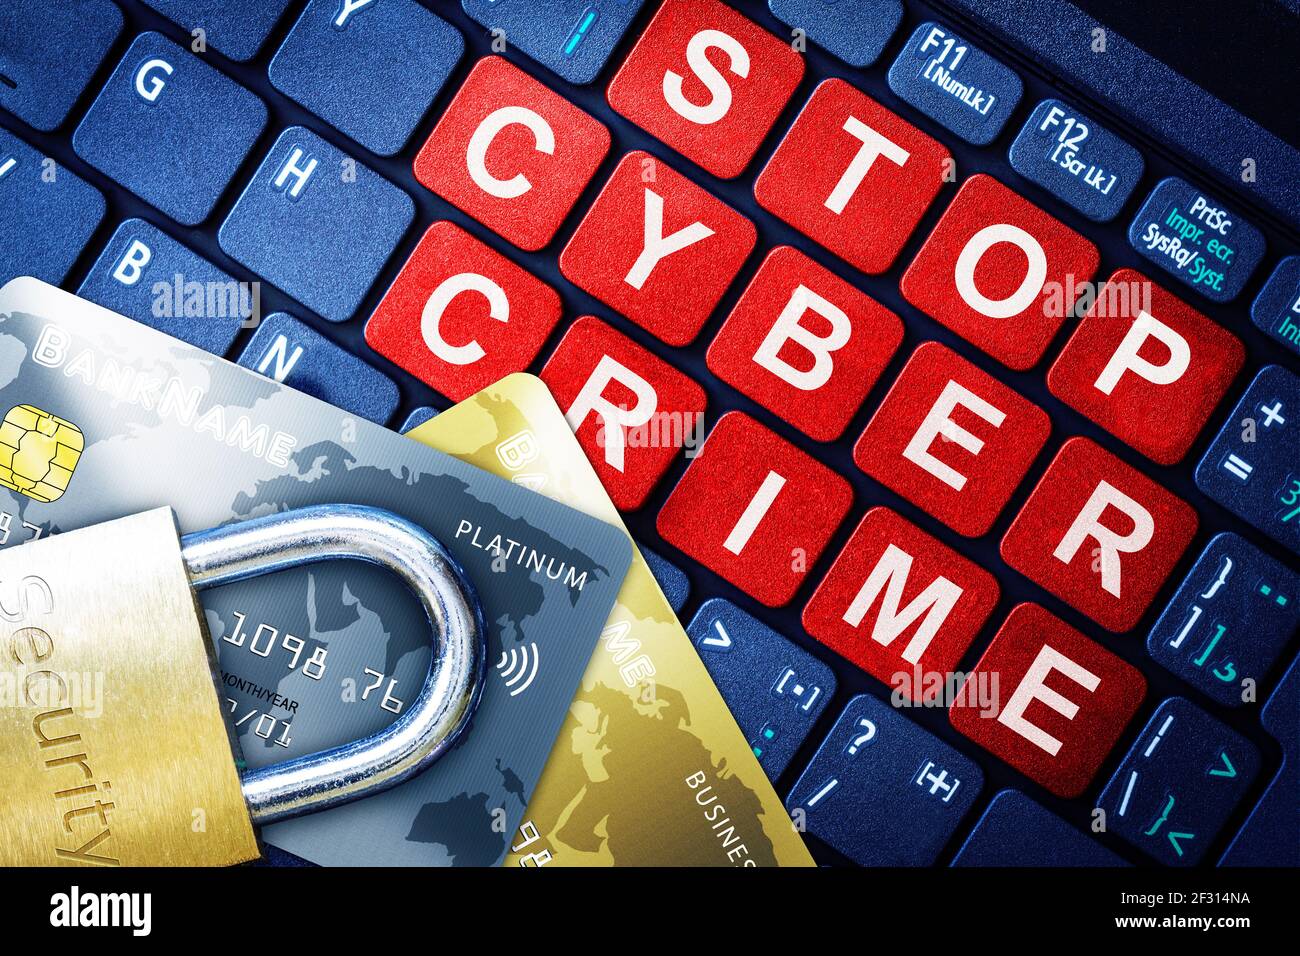 Stoppen Sie Cyber Crime in roten Tasten auf High-Tech-Computer-Tastatur Hintergrund mit Sicherheit gravierten Schloss auf gefälschte Kreditkarten. Konzept der Internet-Sicherheit, Stockfoto